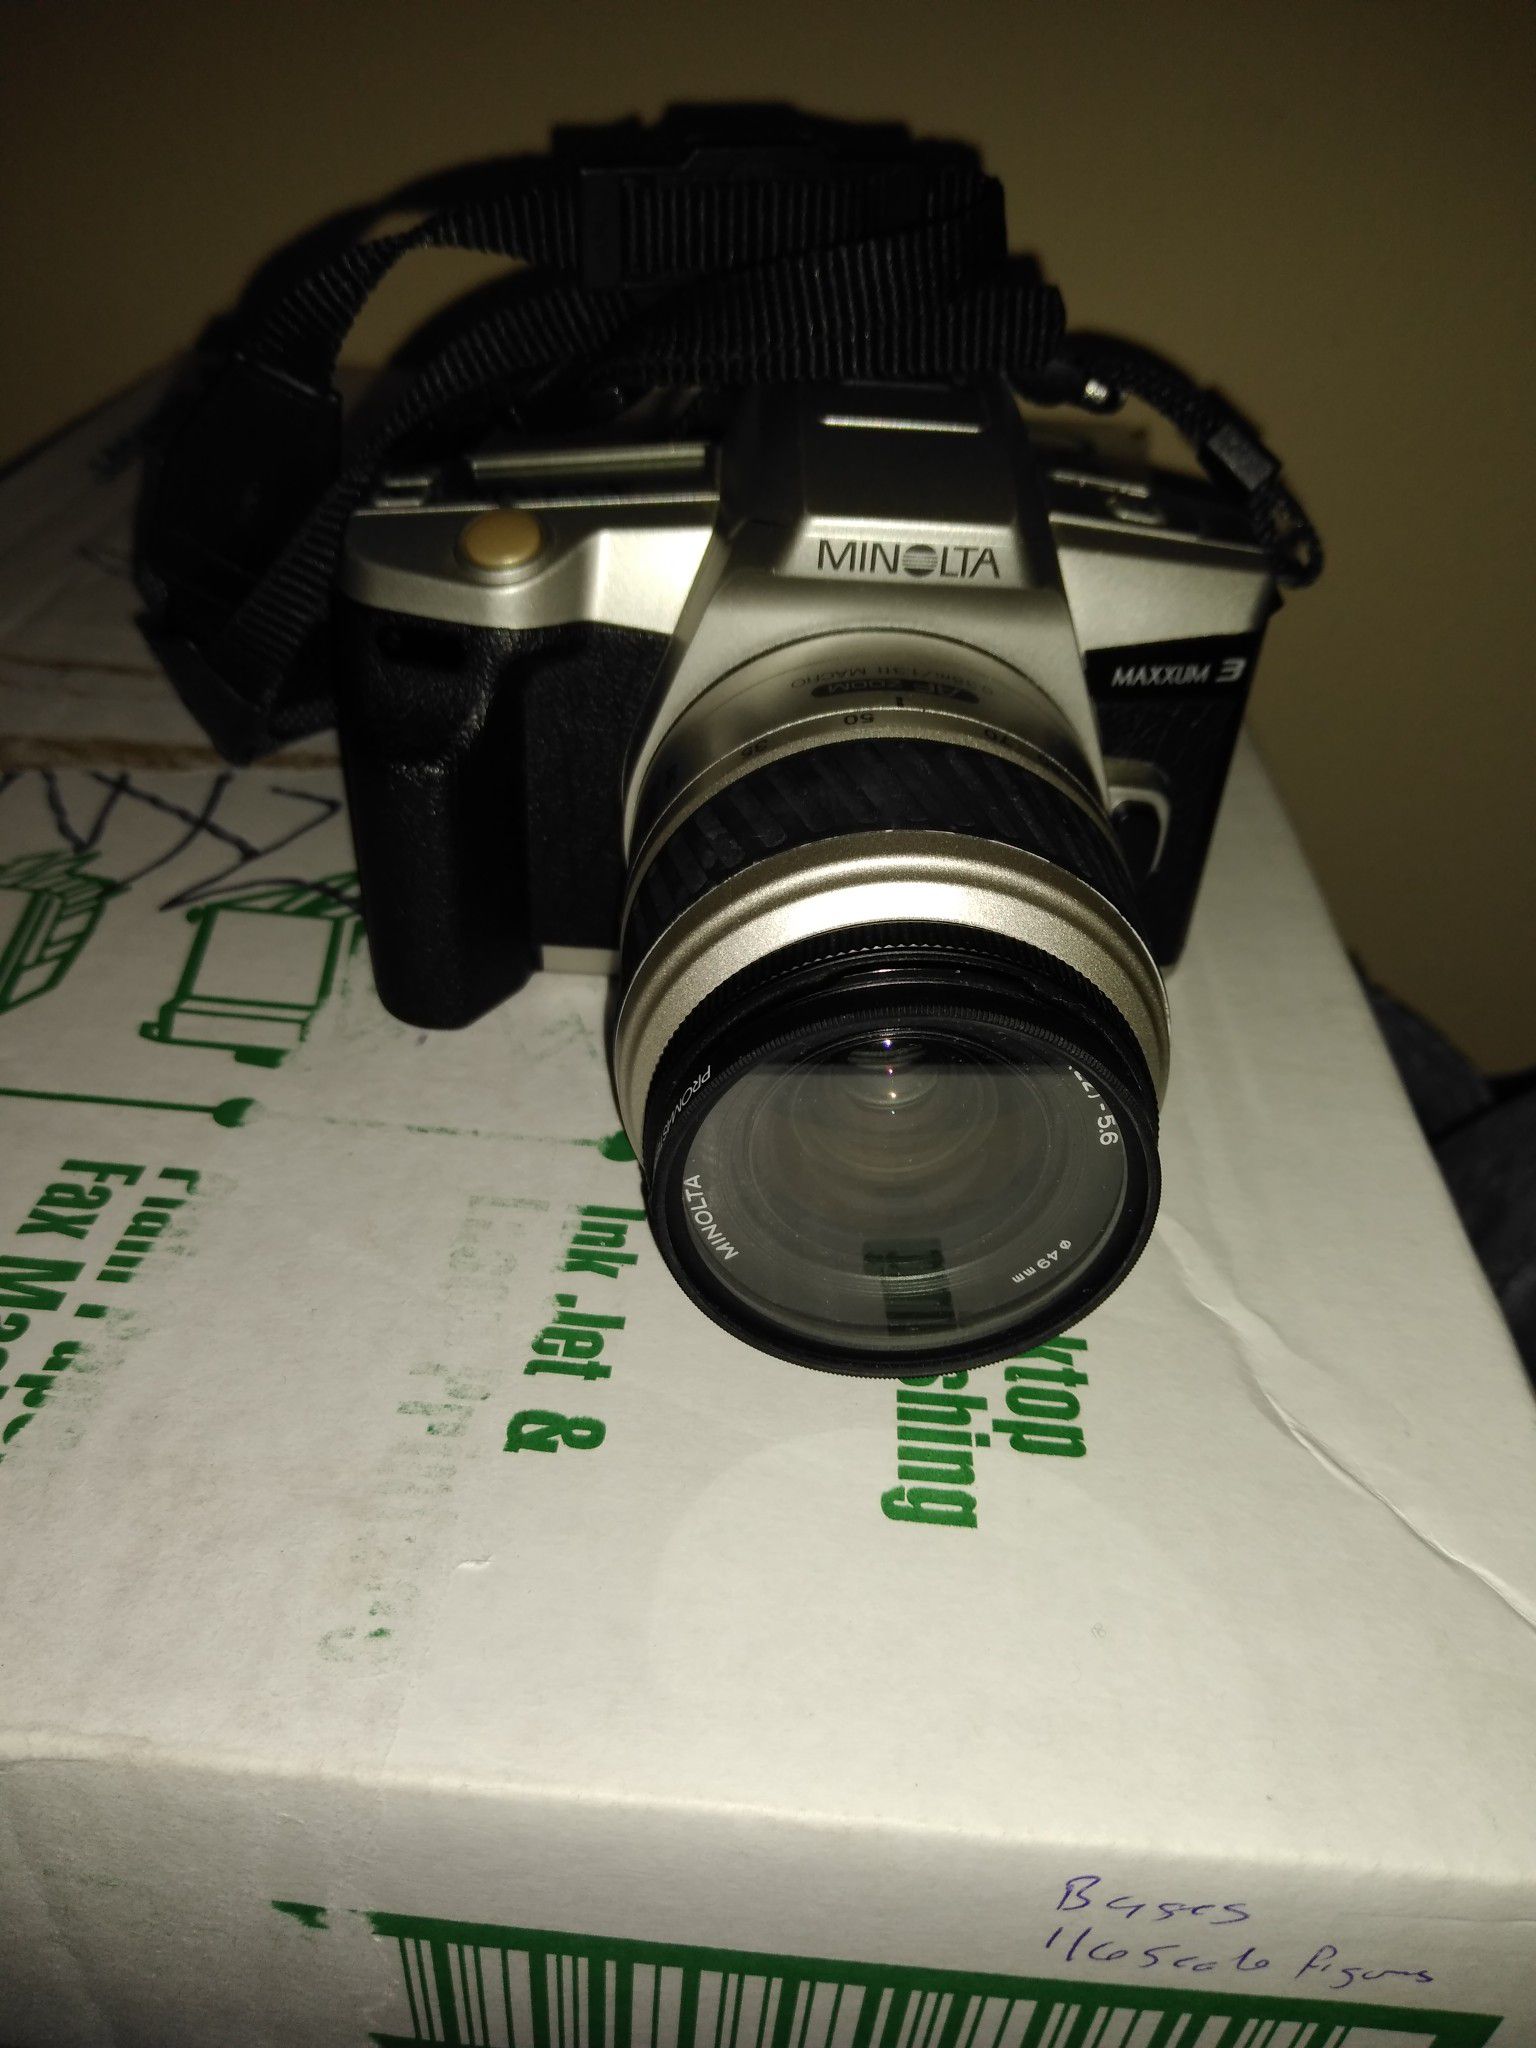 Minolta camera no digital and no SD